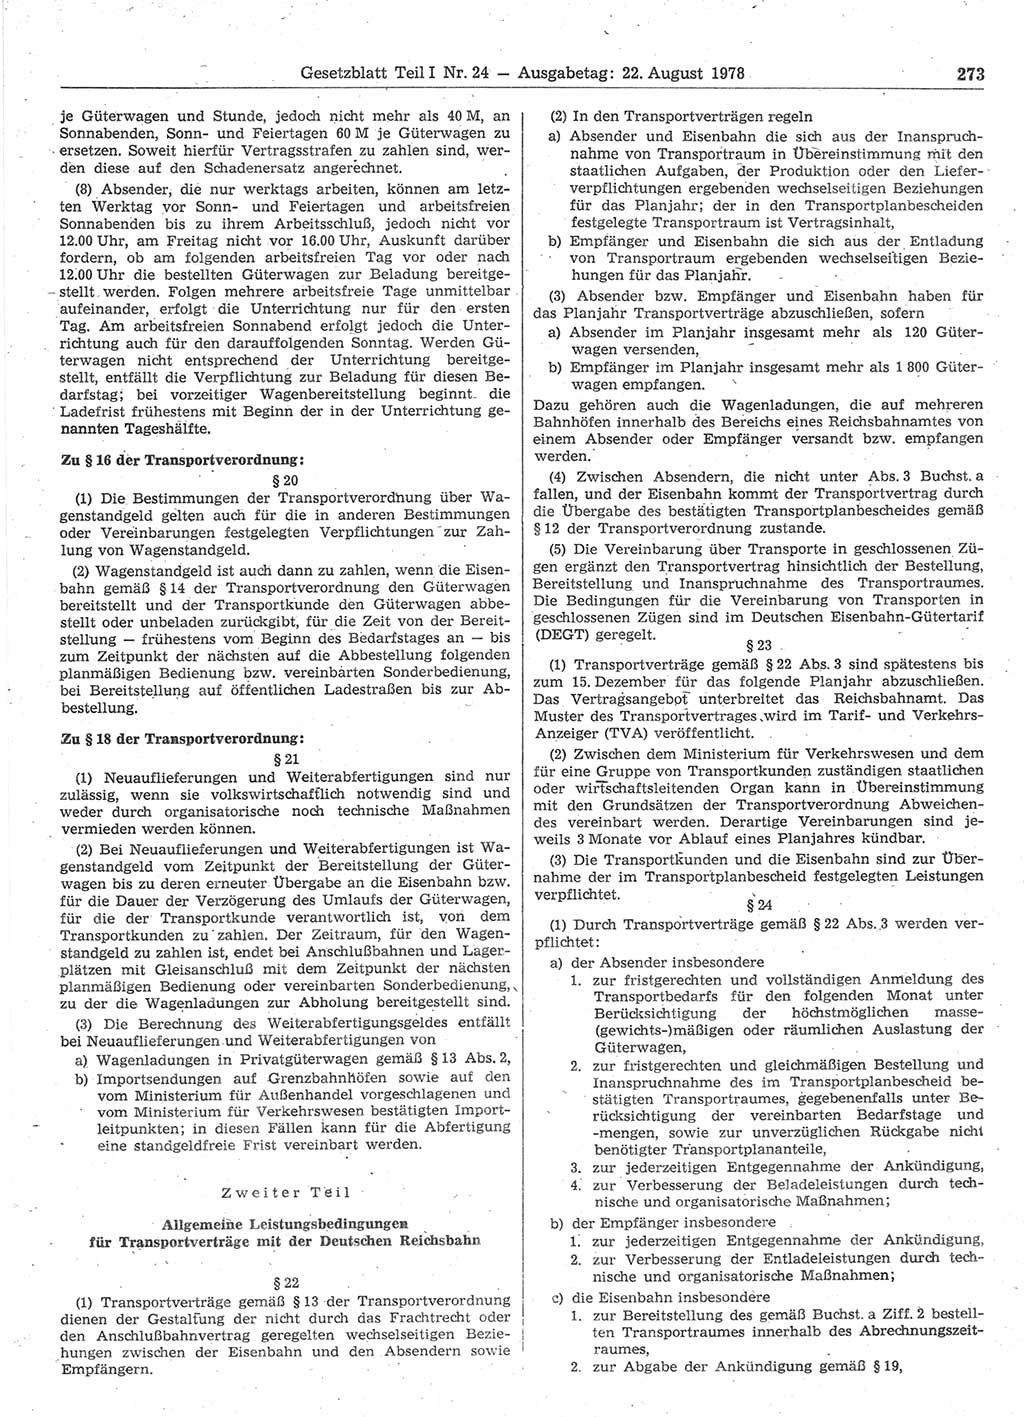 Gesetzblatt (GBl.) der Deutschen Demokratischen Republik (DDR) Teil Ⅰ 1978, Seite 273 (GBl. DDR Ⅰ 1978, S. 273)